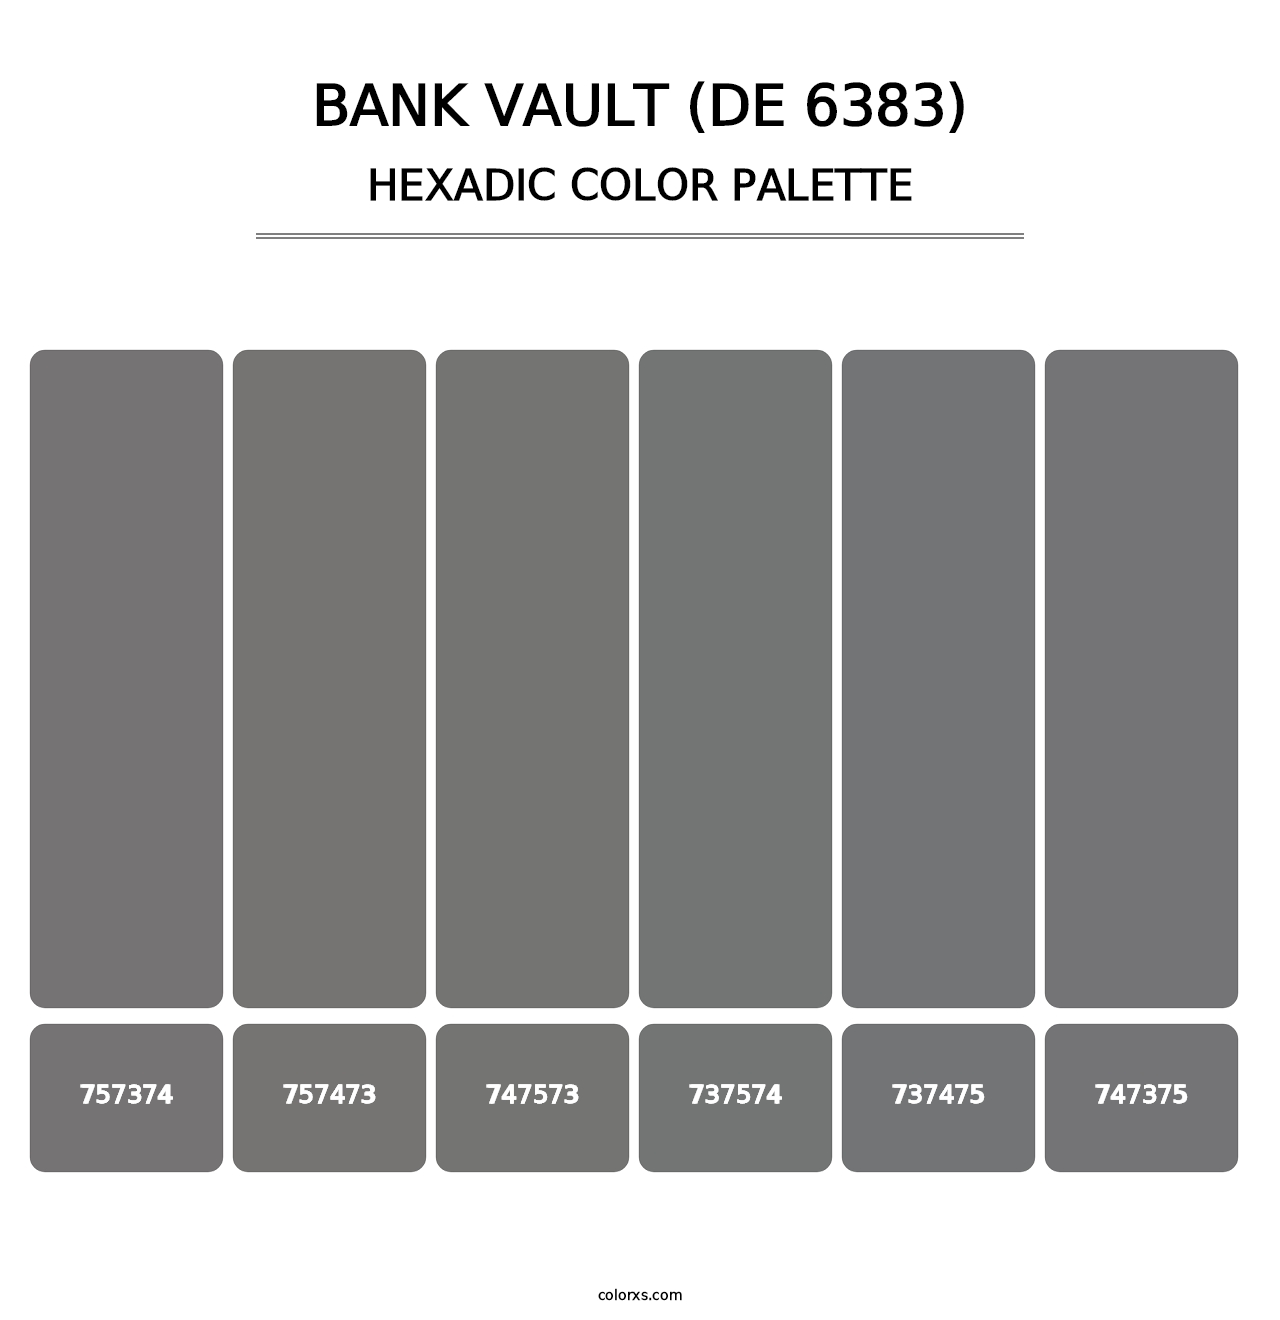 Bank Vault (DE 6383) - Hexadic Color Palette